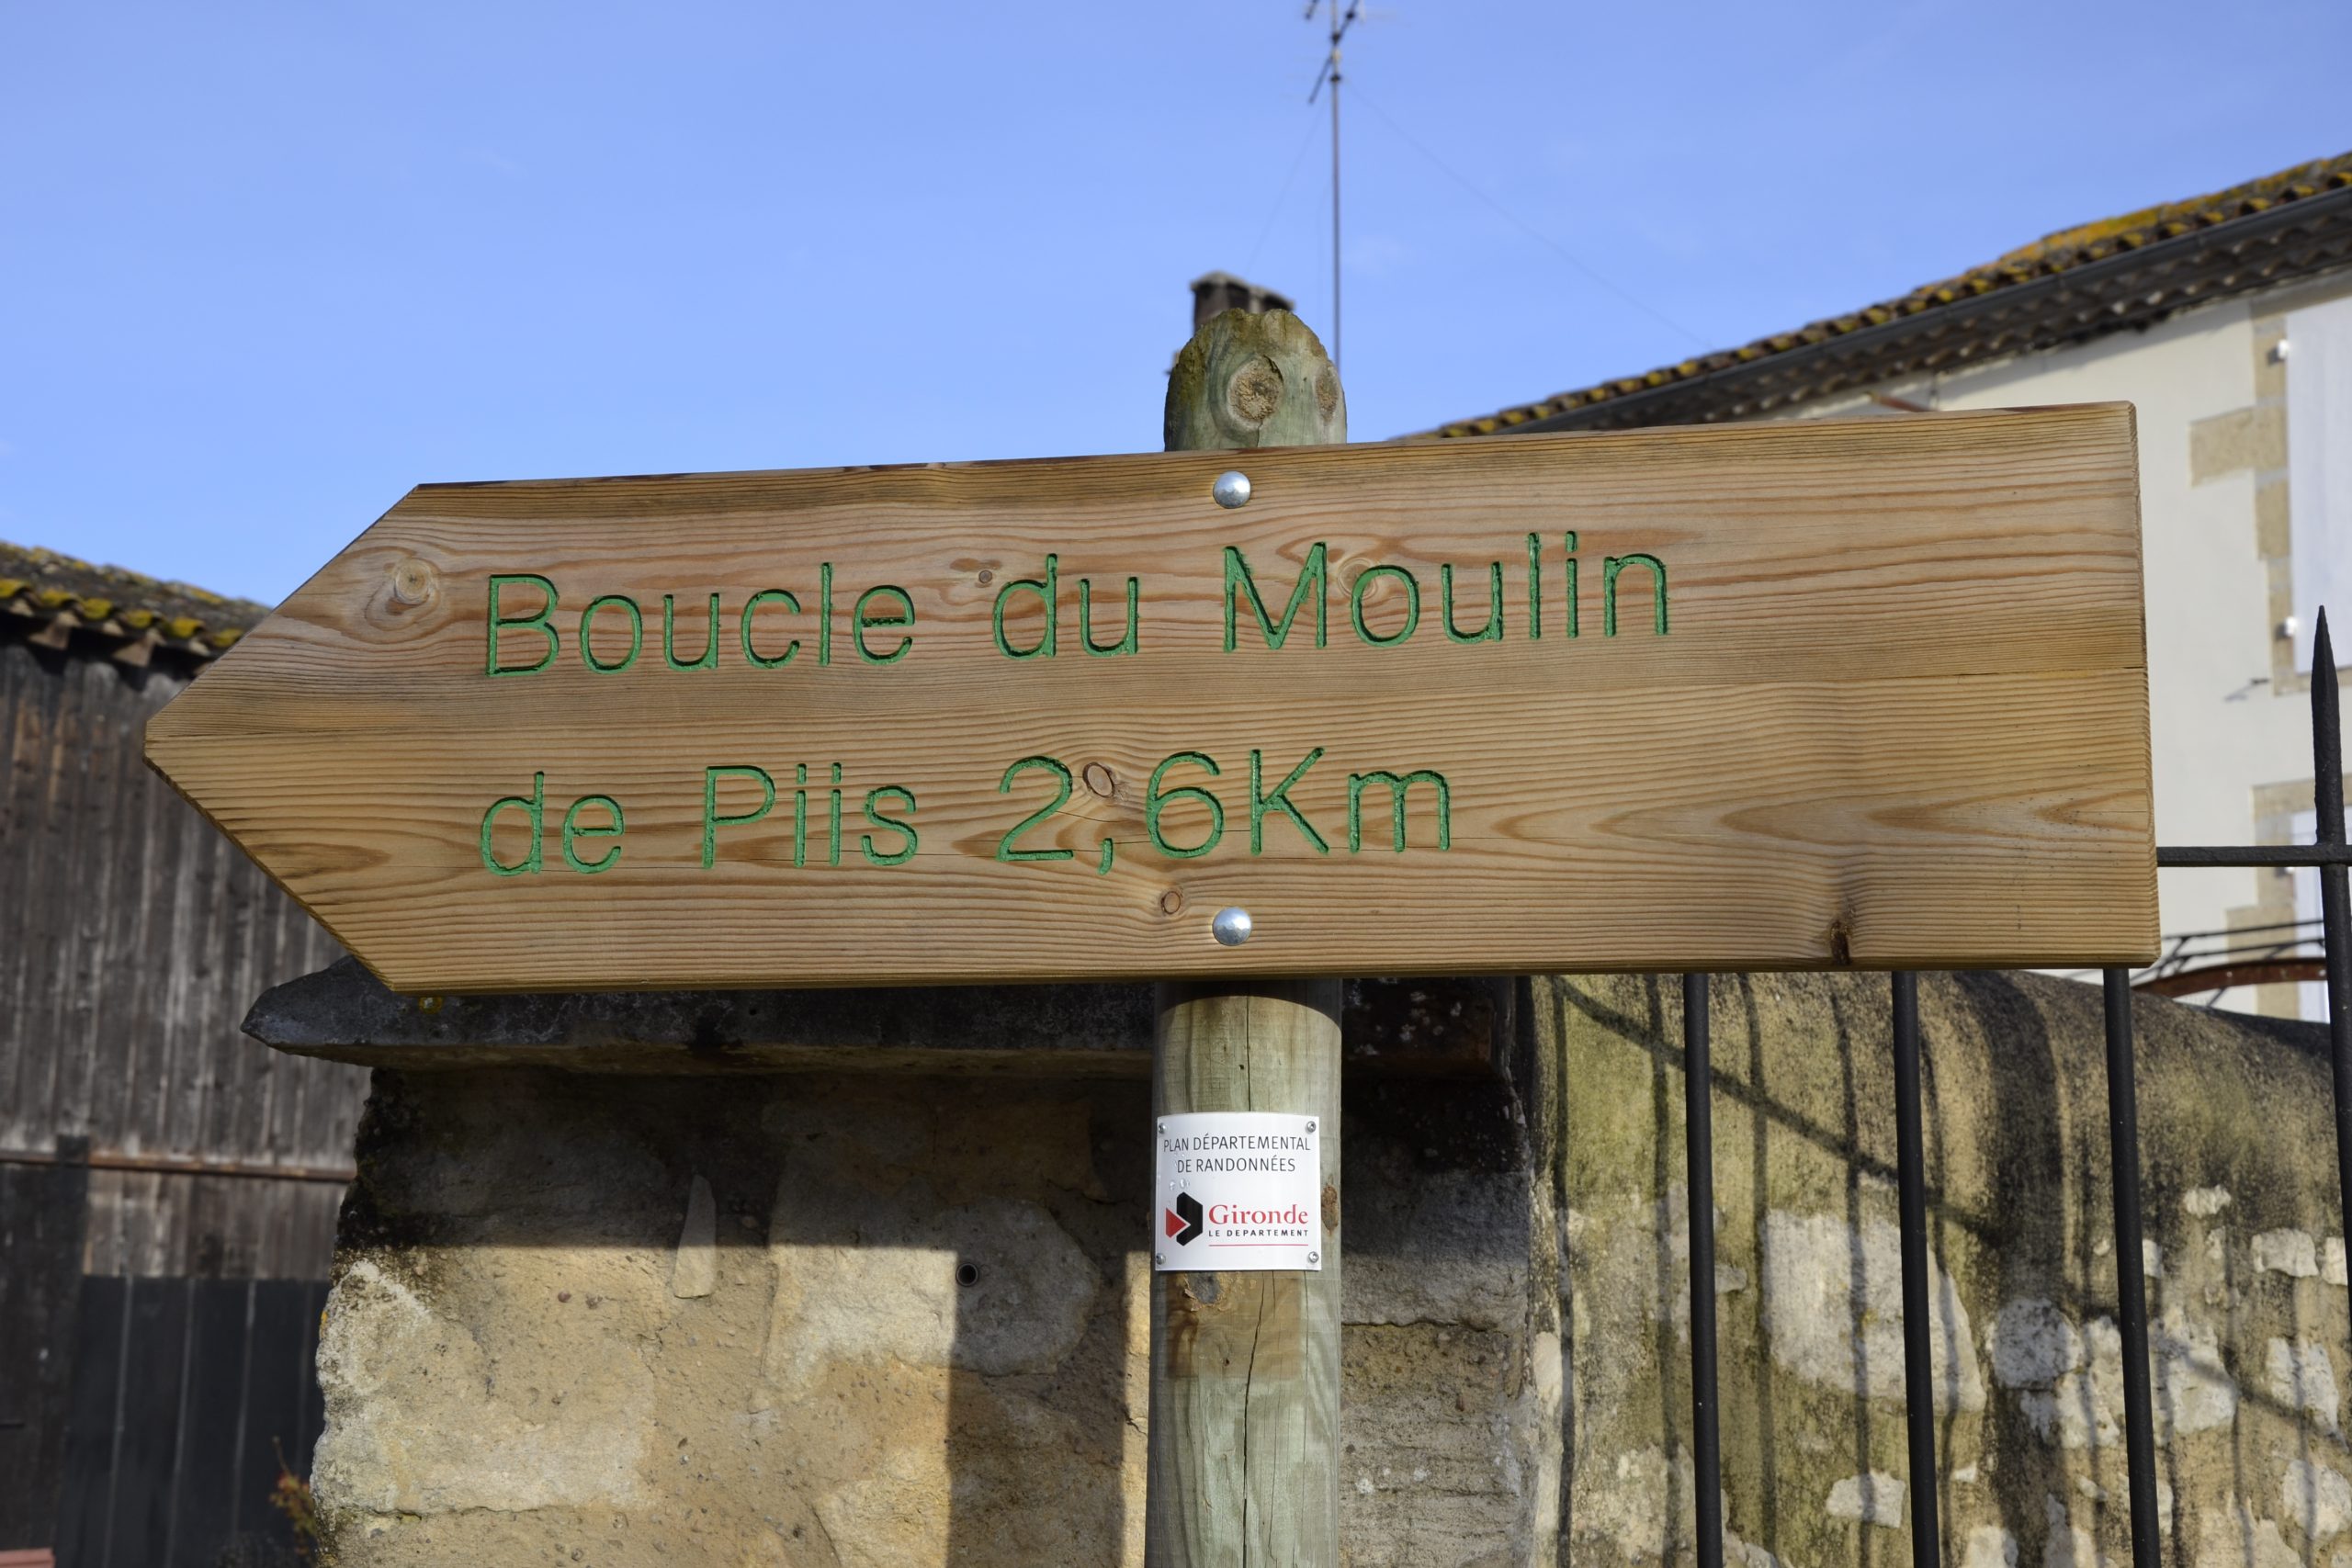 Ruta circular del Moulin de Piis